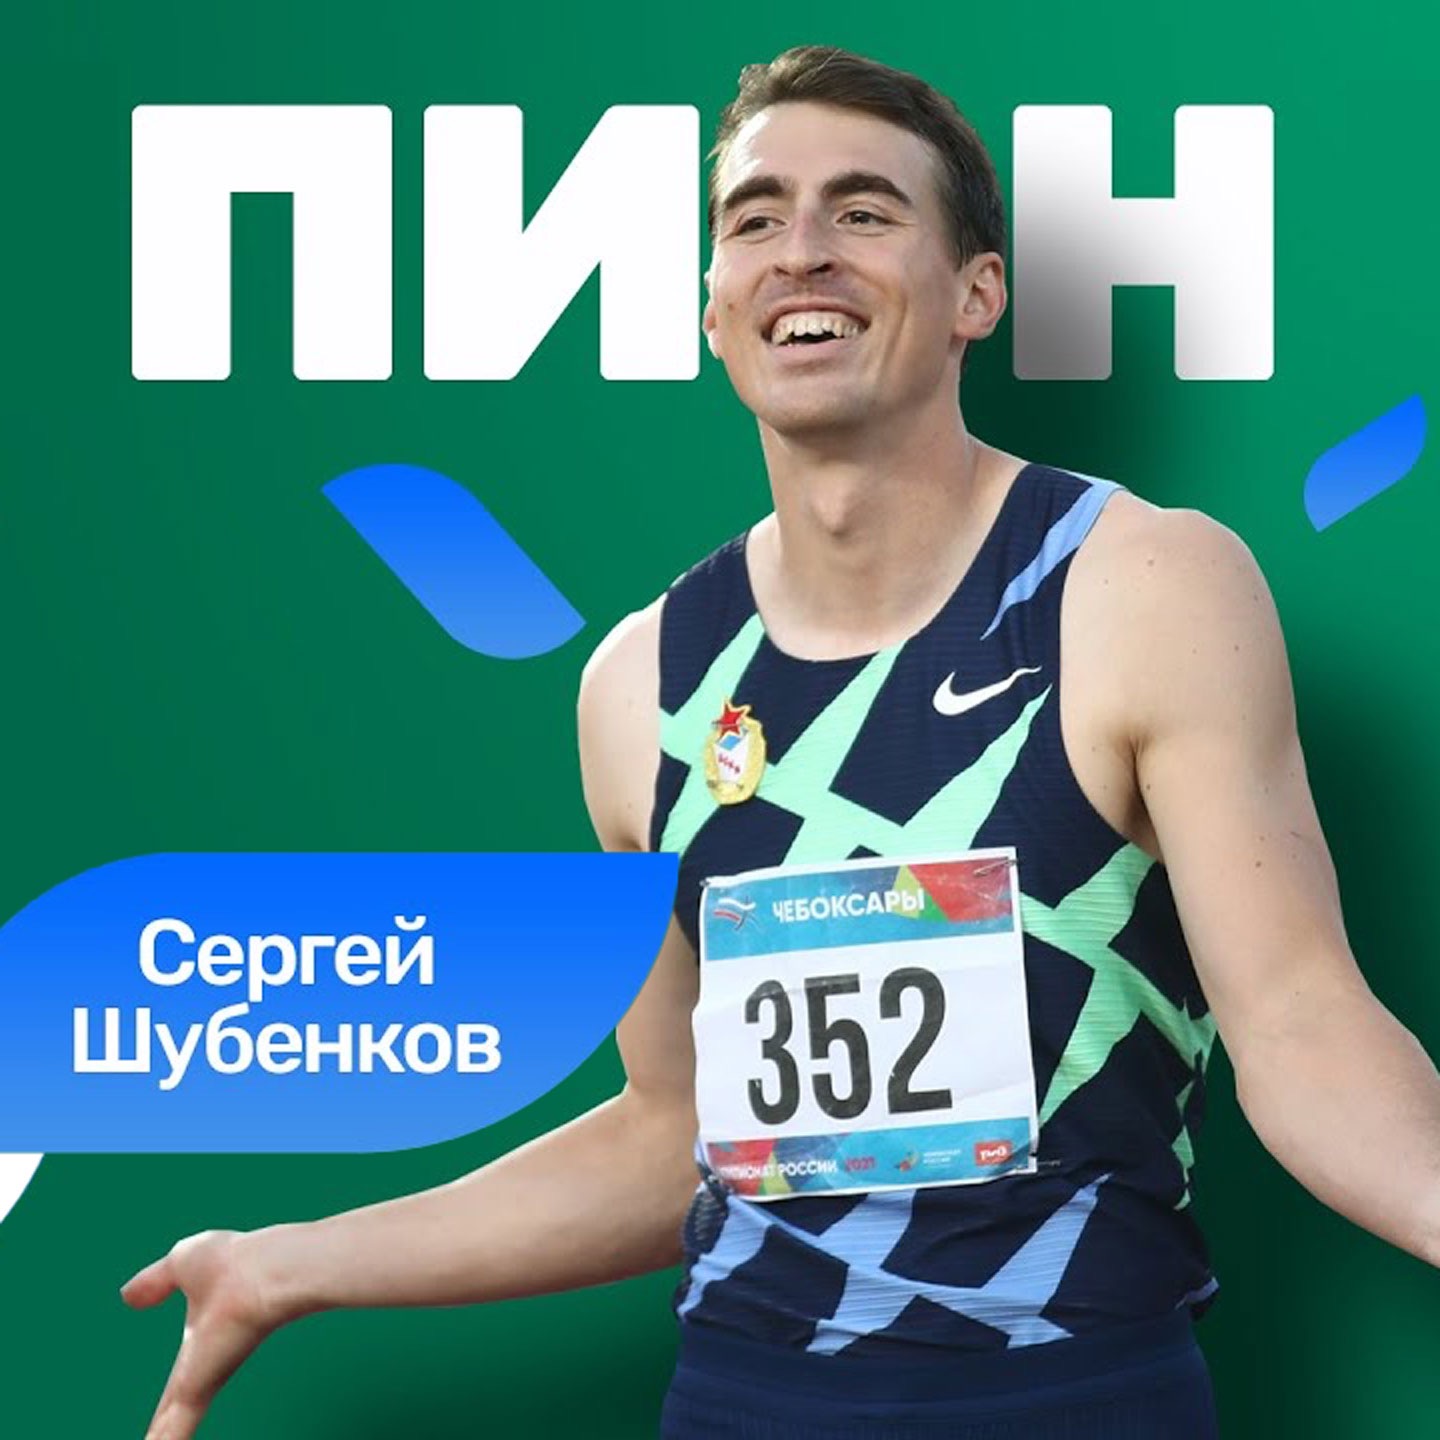 Сергей Шубенков: если я спортсмен, то я не тренер